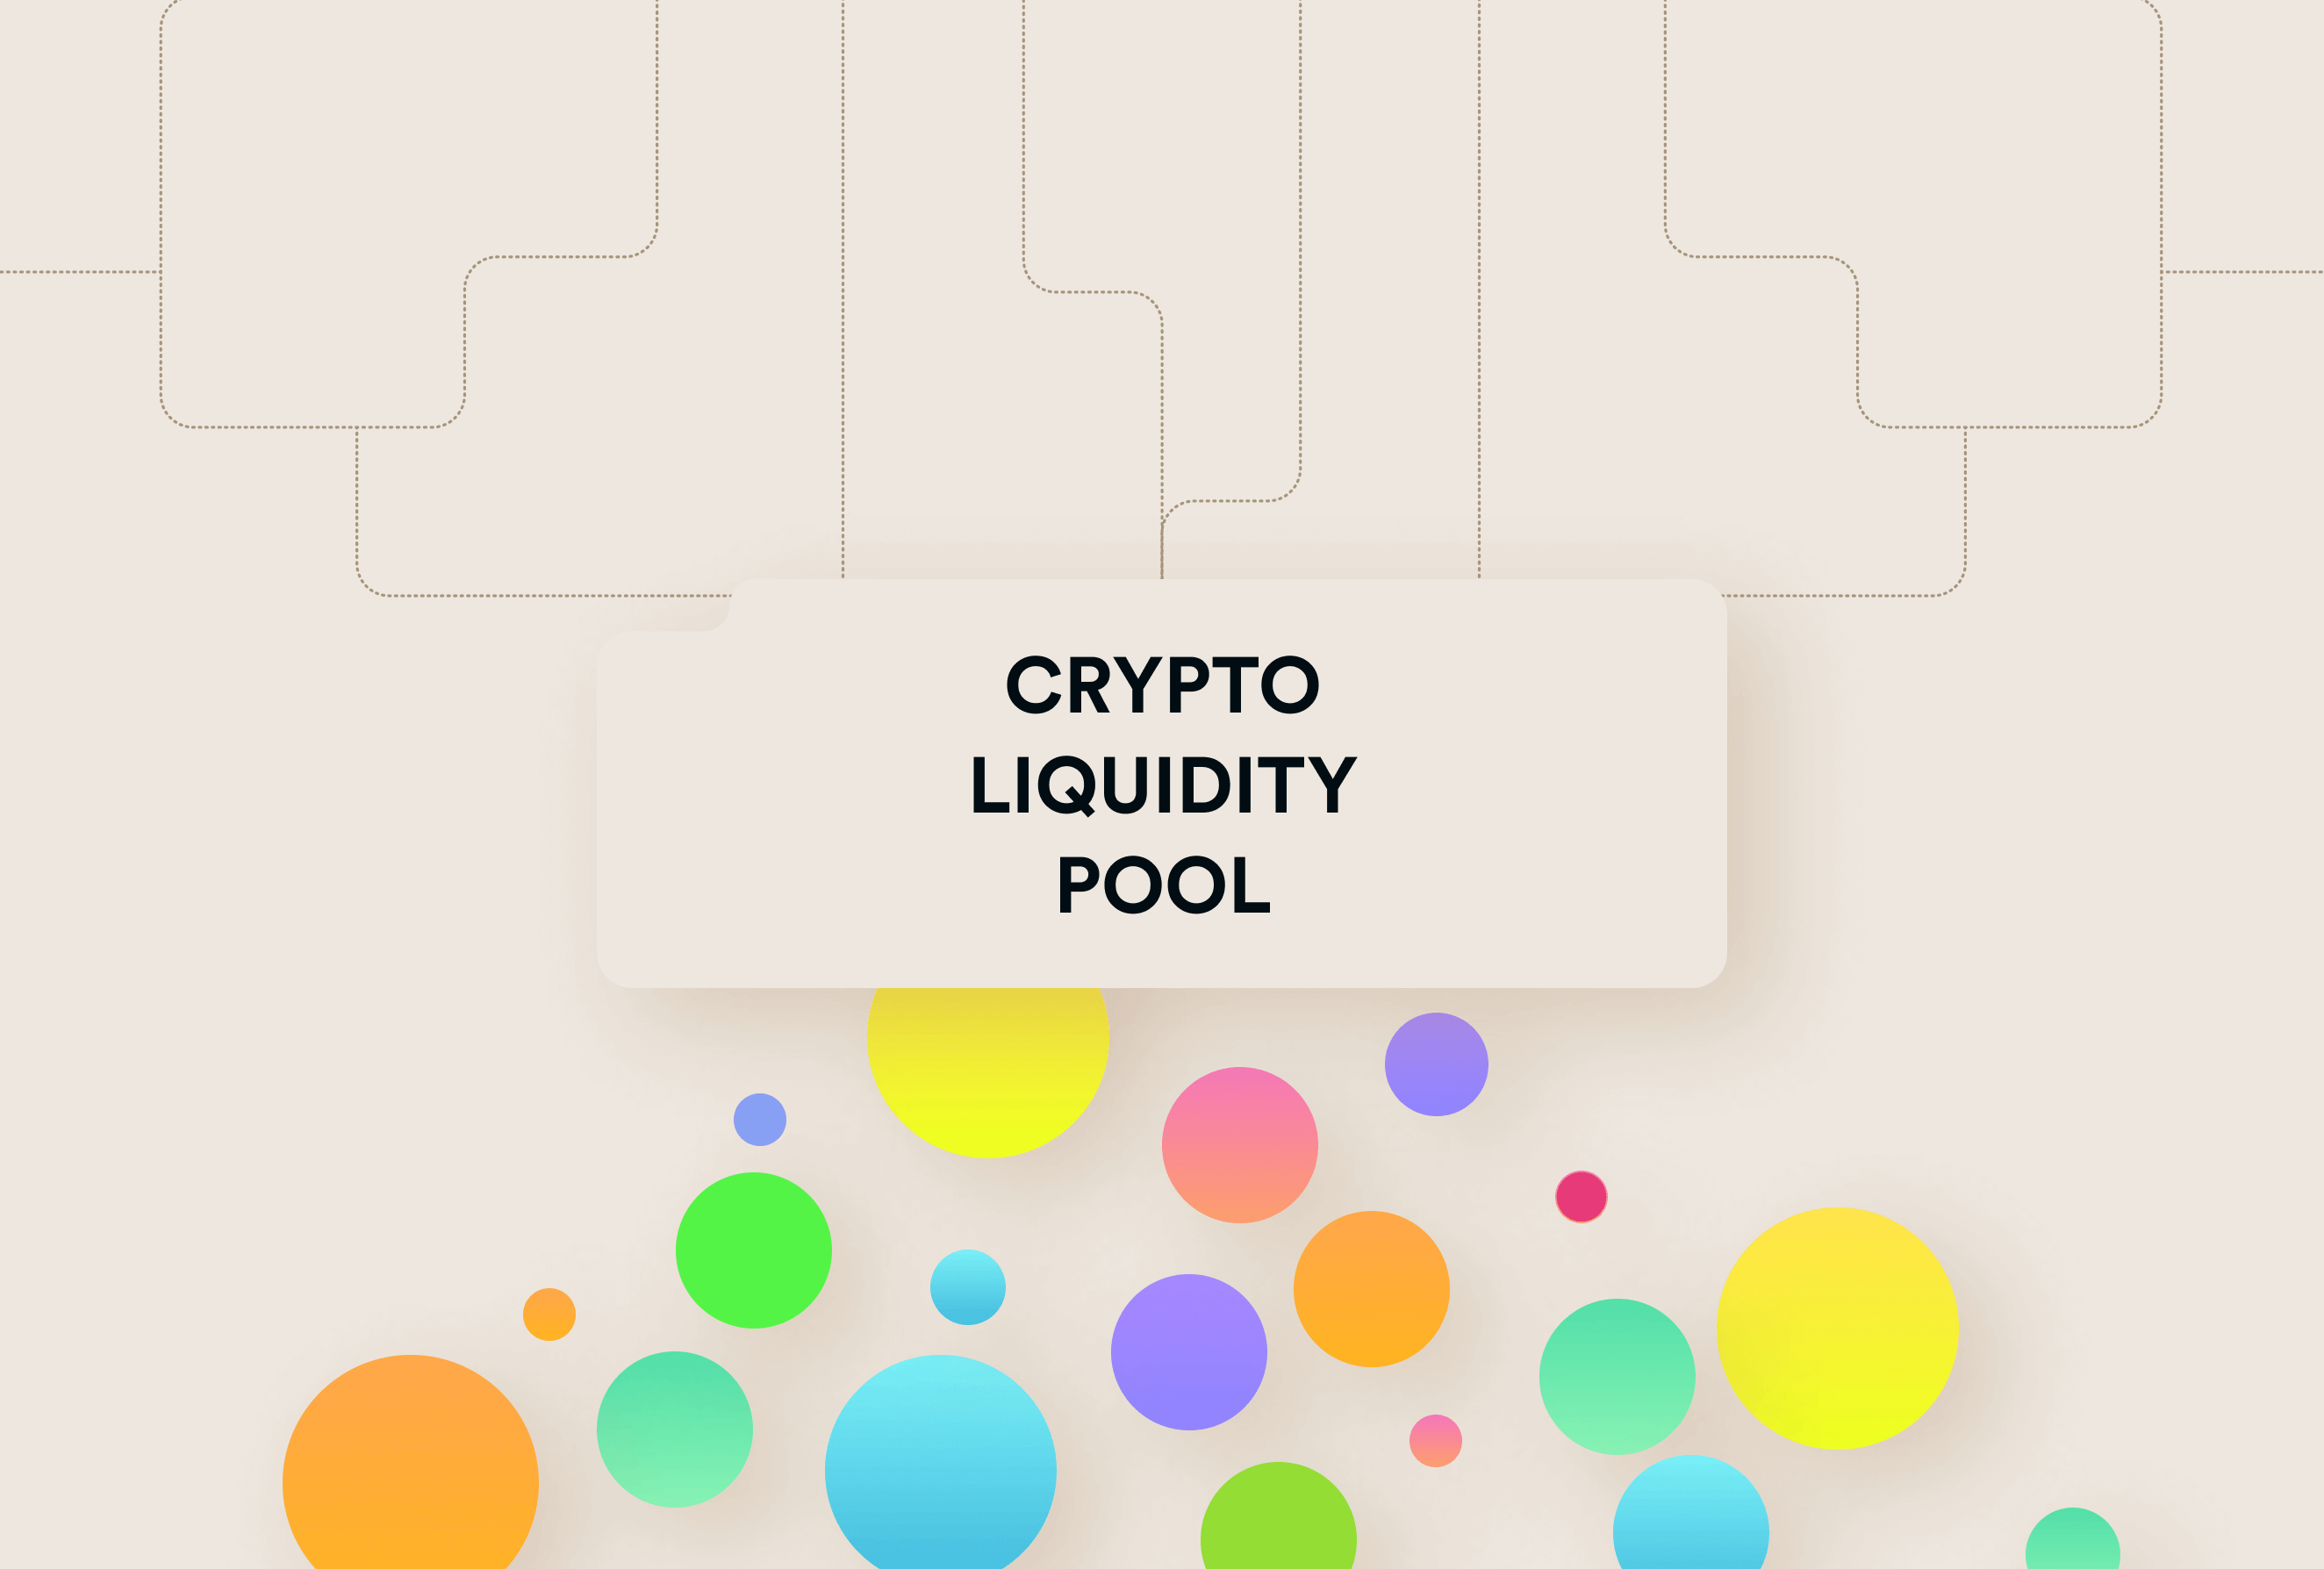 https://liquidity-provider.com/app/uploads/2022/08/sposoby-obespechit-likvidnost-dlya-kriptovalyutnoj-birzhi.png